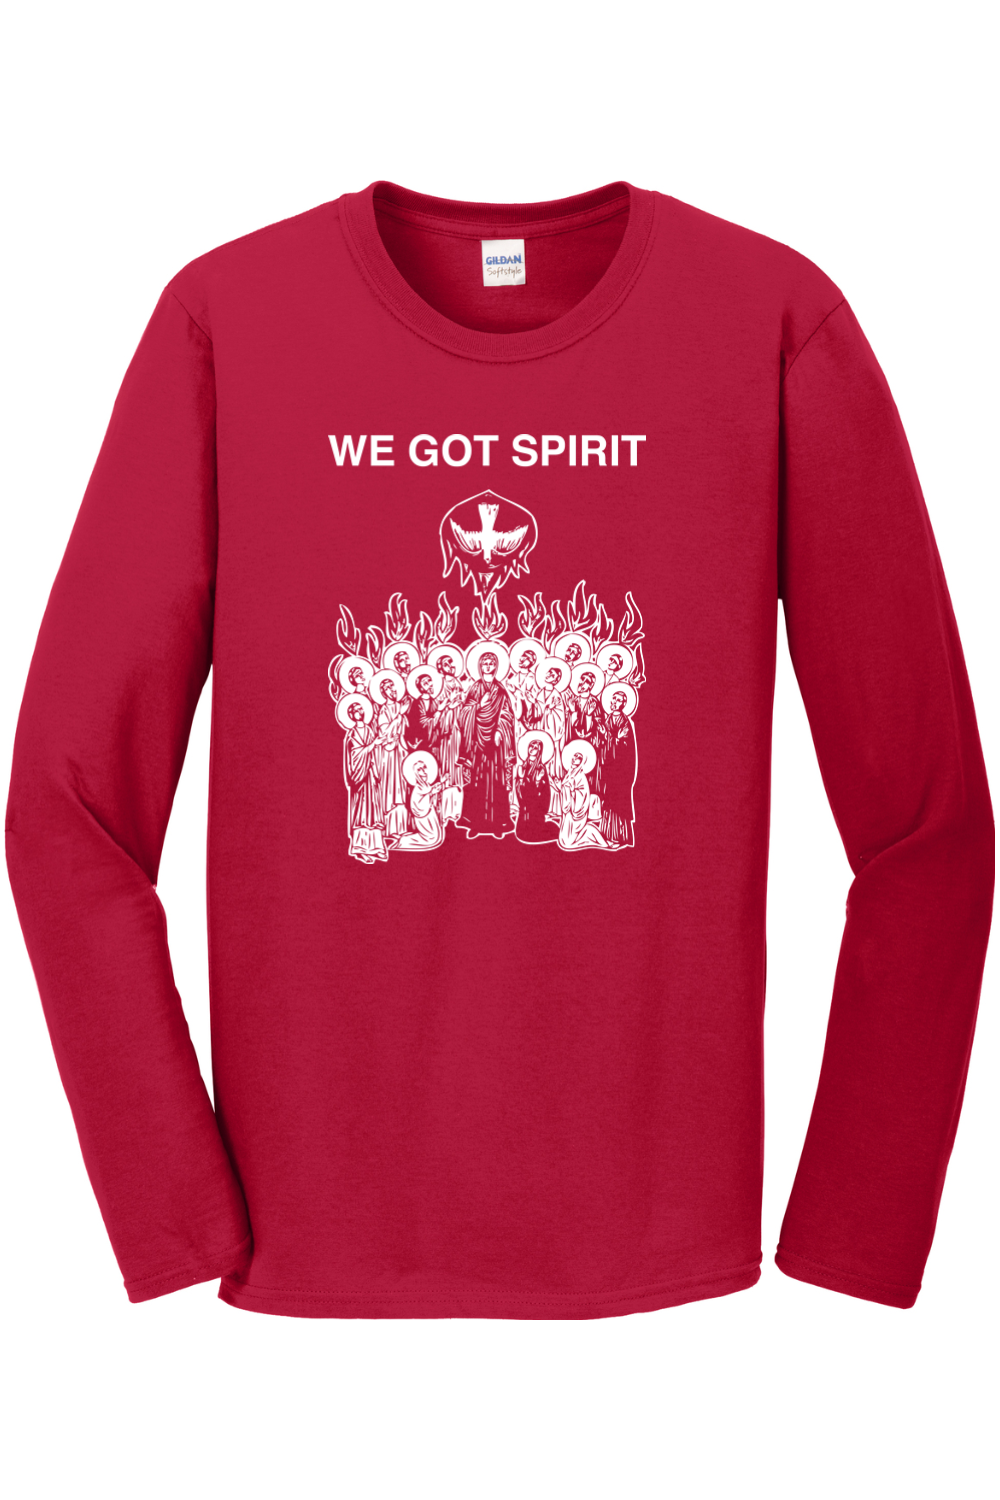 We Got Spirit - Pentecost Long Sleeve